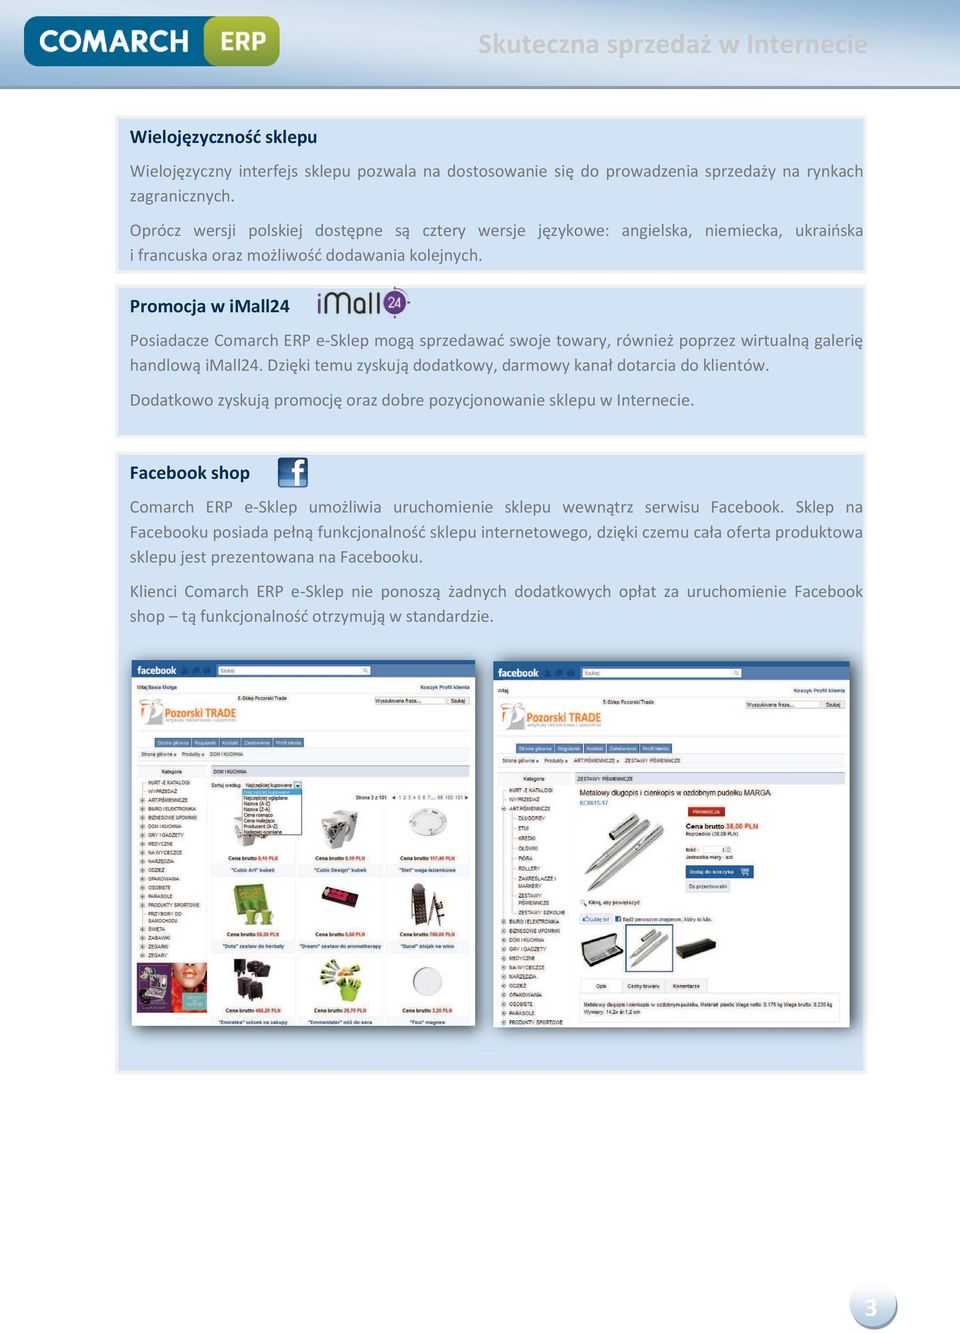 Promocja w imall24 Posiadacze Comarch ERP e-sklep mogą sprzedawać swoje towary, również poprzez wirtualną galerię handlową imall24. Dzięki temu zyskują dodatkowy, darmowy kanał dotarcia do klientów.